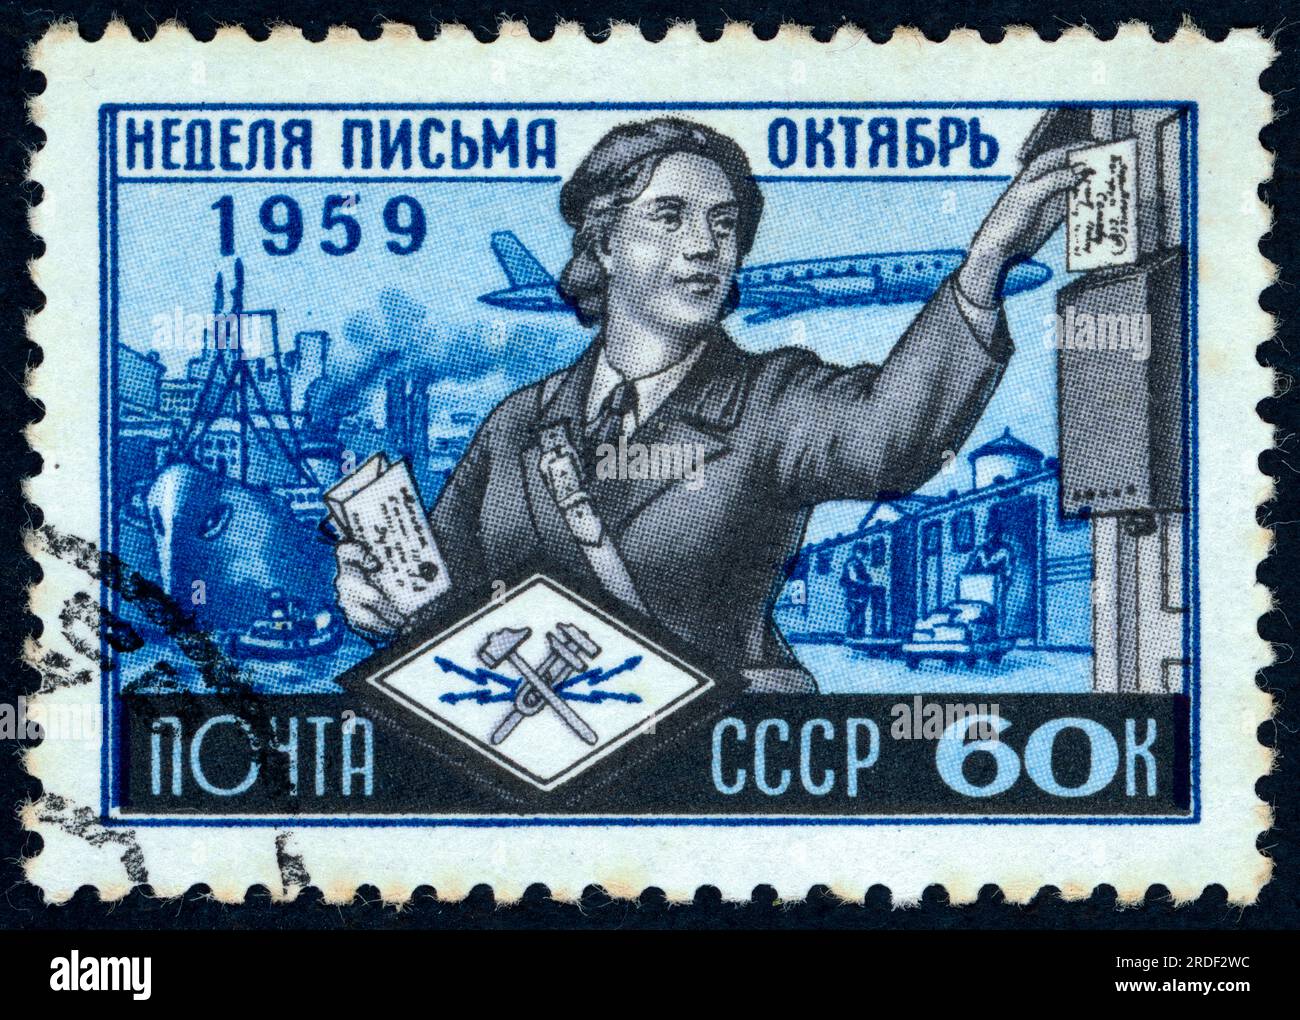 Timbre-poste émis en URSS en 1959 à l'occasion de la Journée mondiale de la poste et de la semaine internationale de la rédaction de lettres. Banque D'Images